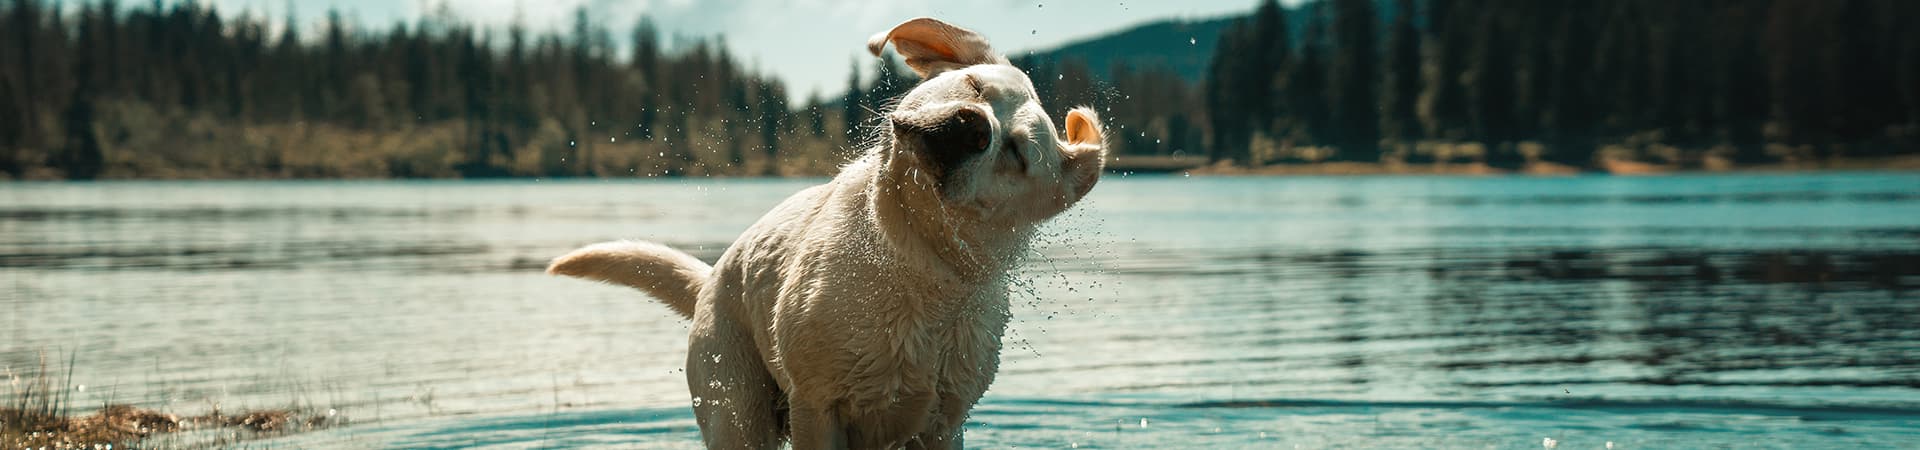 Hund im See schüttelt seinen Kopf